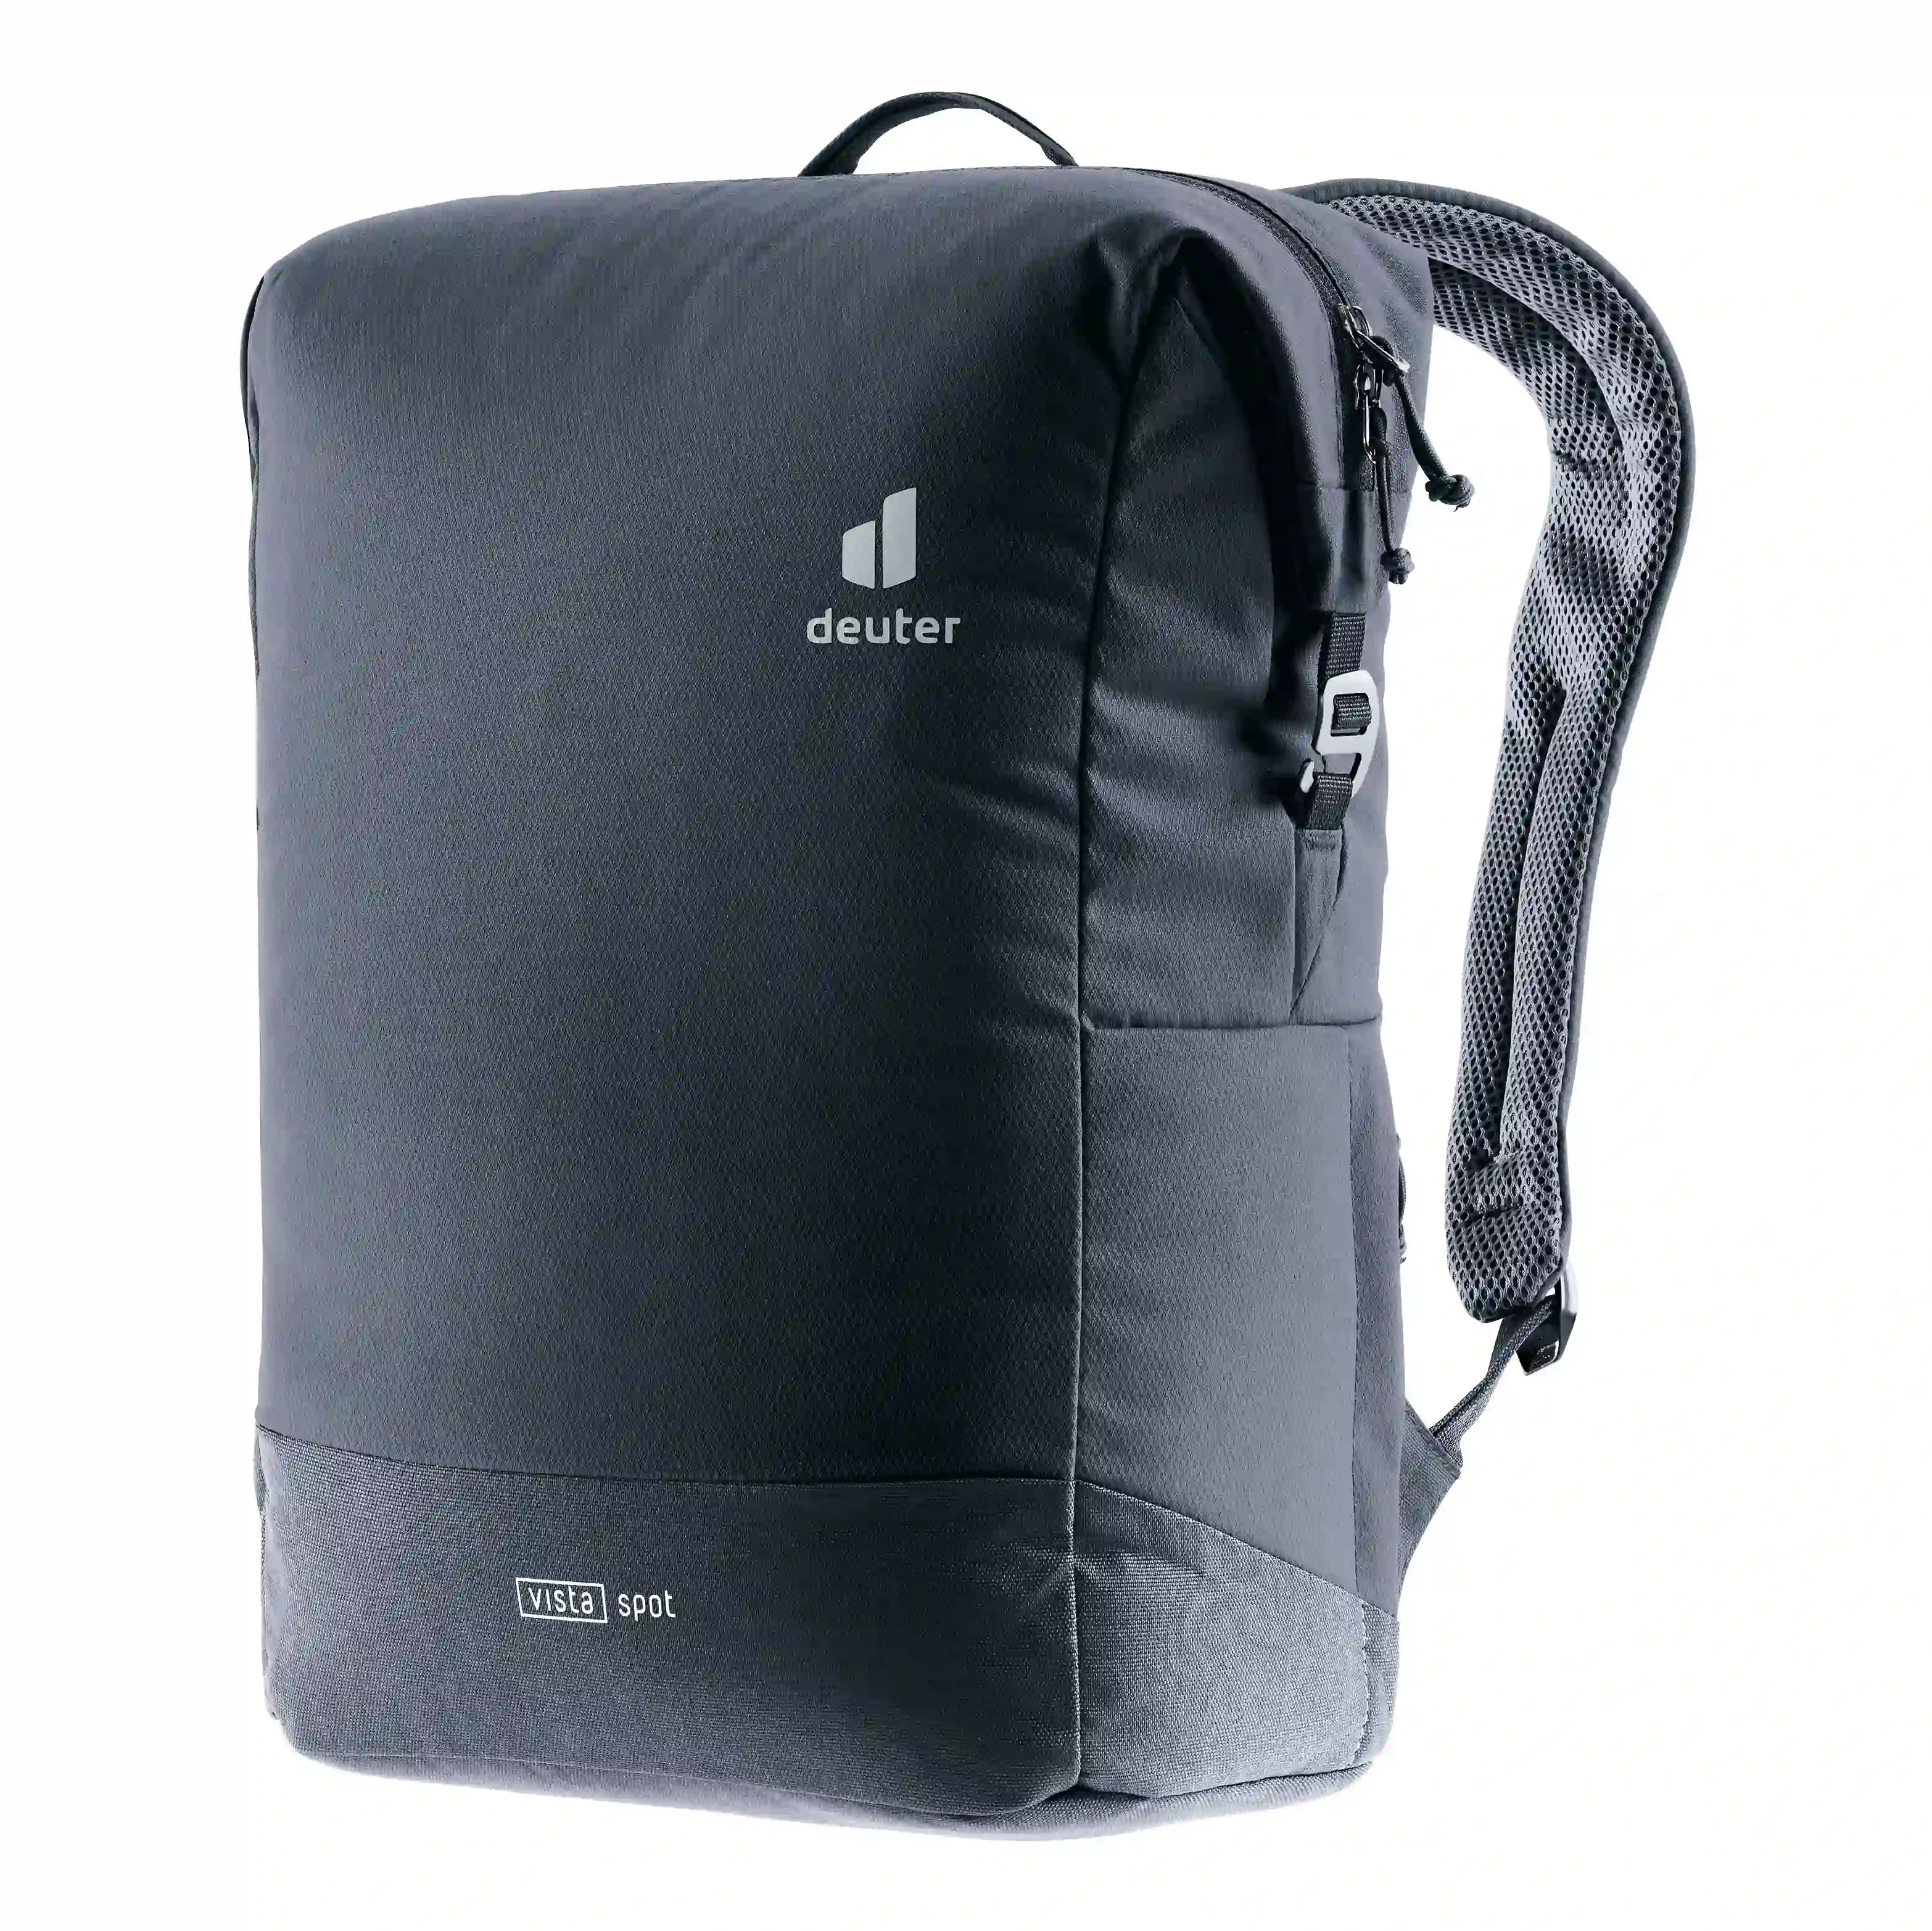 Deuter Daypack Vista Spot Backpack 40 cm - Black